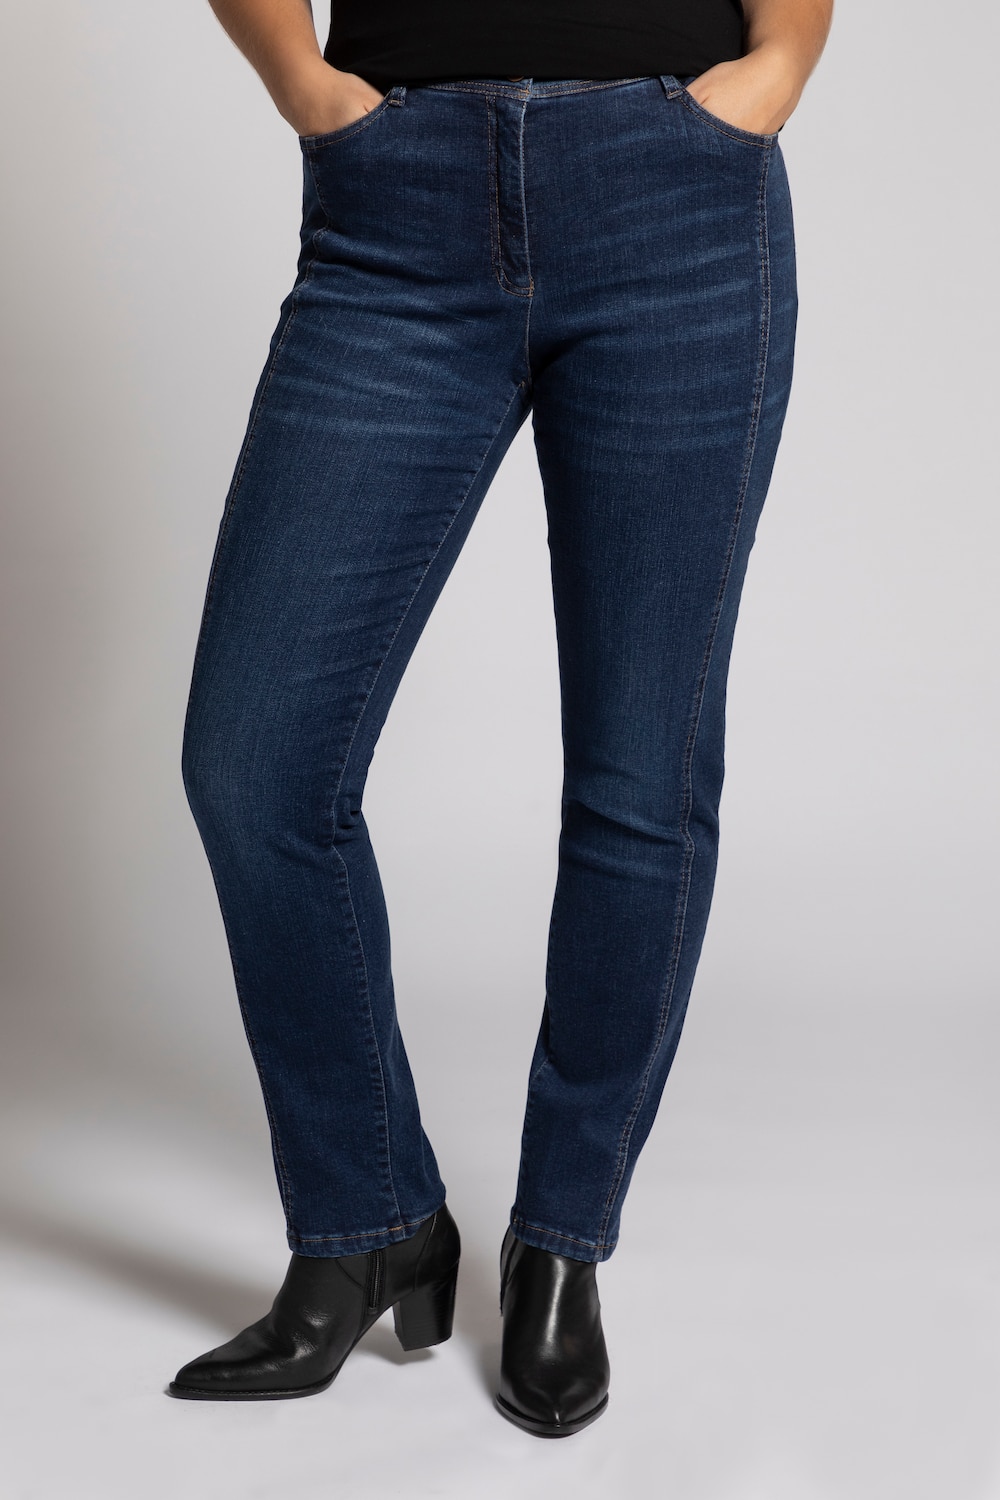 Grote Maten jeans Sienna, Dames, blauw, Maat: 50, Katoen/Synthetische vezels, Ulla Popken